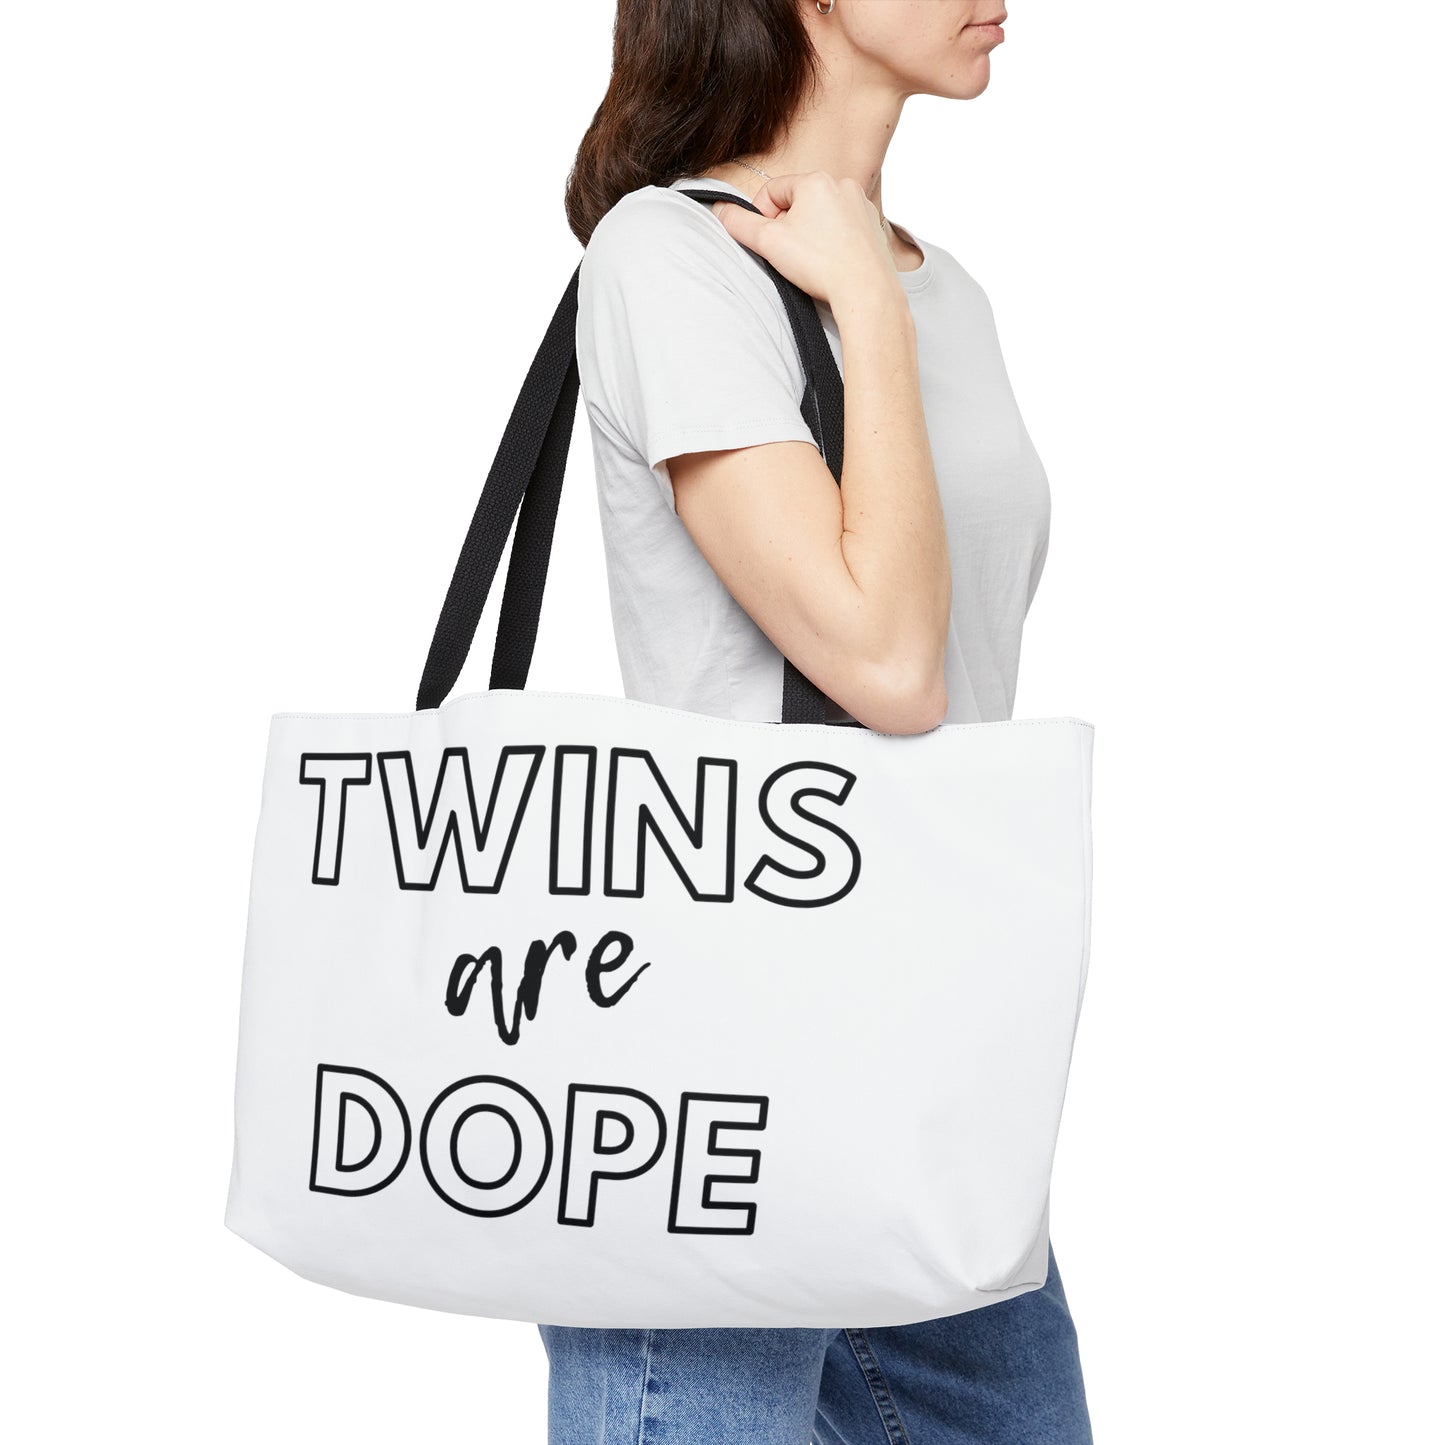 Twins are Dope - Weekender Tote Bag